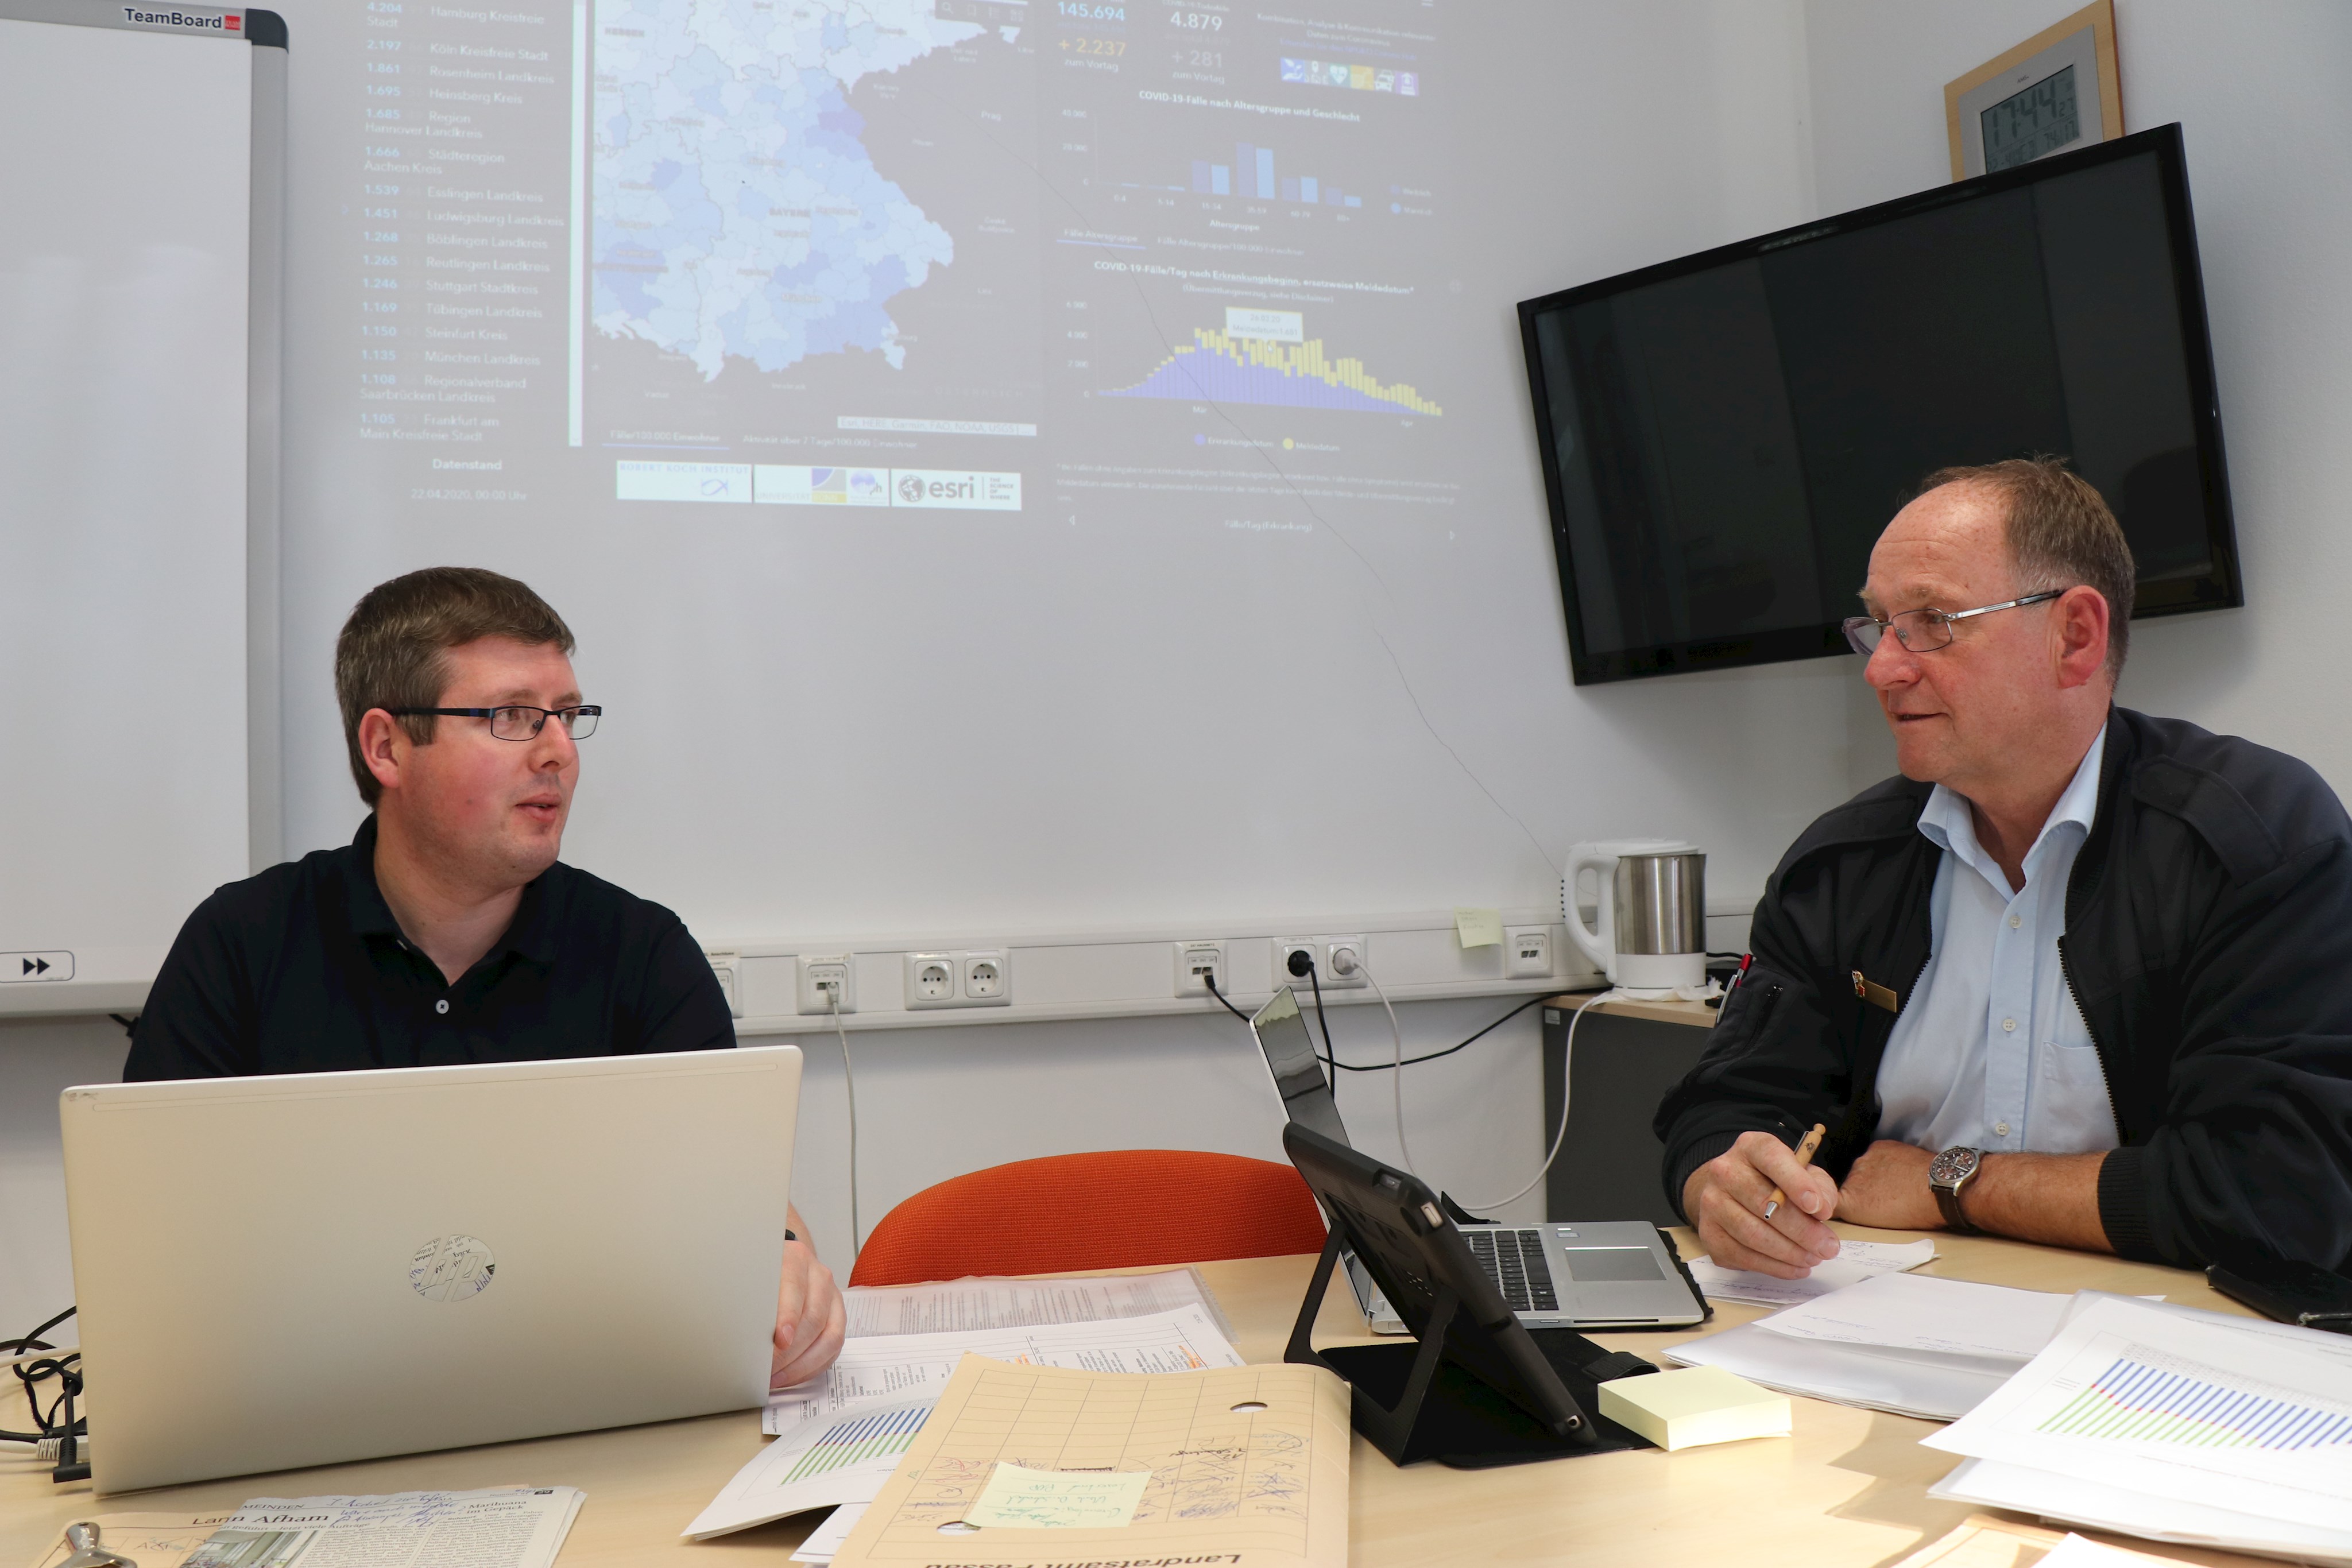 Seit Mitte März beschäftigt die Corona-Krise den Katastrophenschutz im Landkreis Passau. Das Team der FüGK mit Simon Pilsl (l.) und Josef Ascher musste sich besonders zu Beginn auf neue Herausforderungen einstellen.